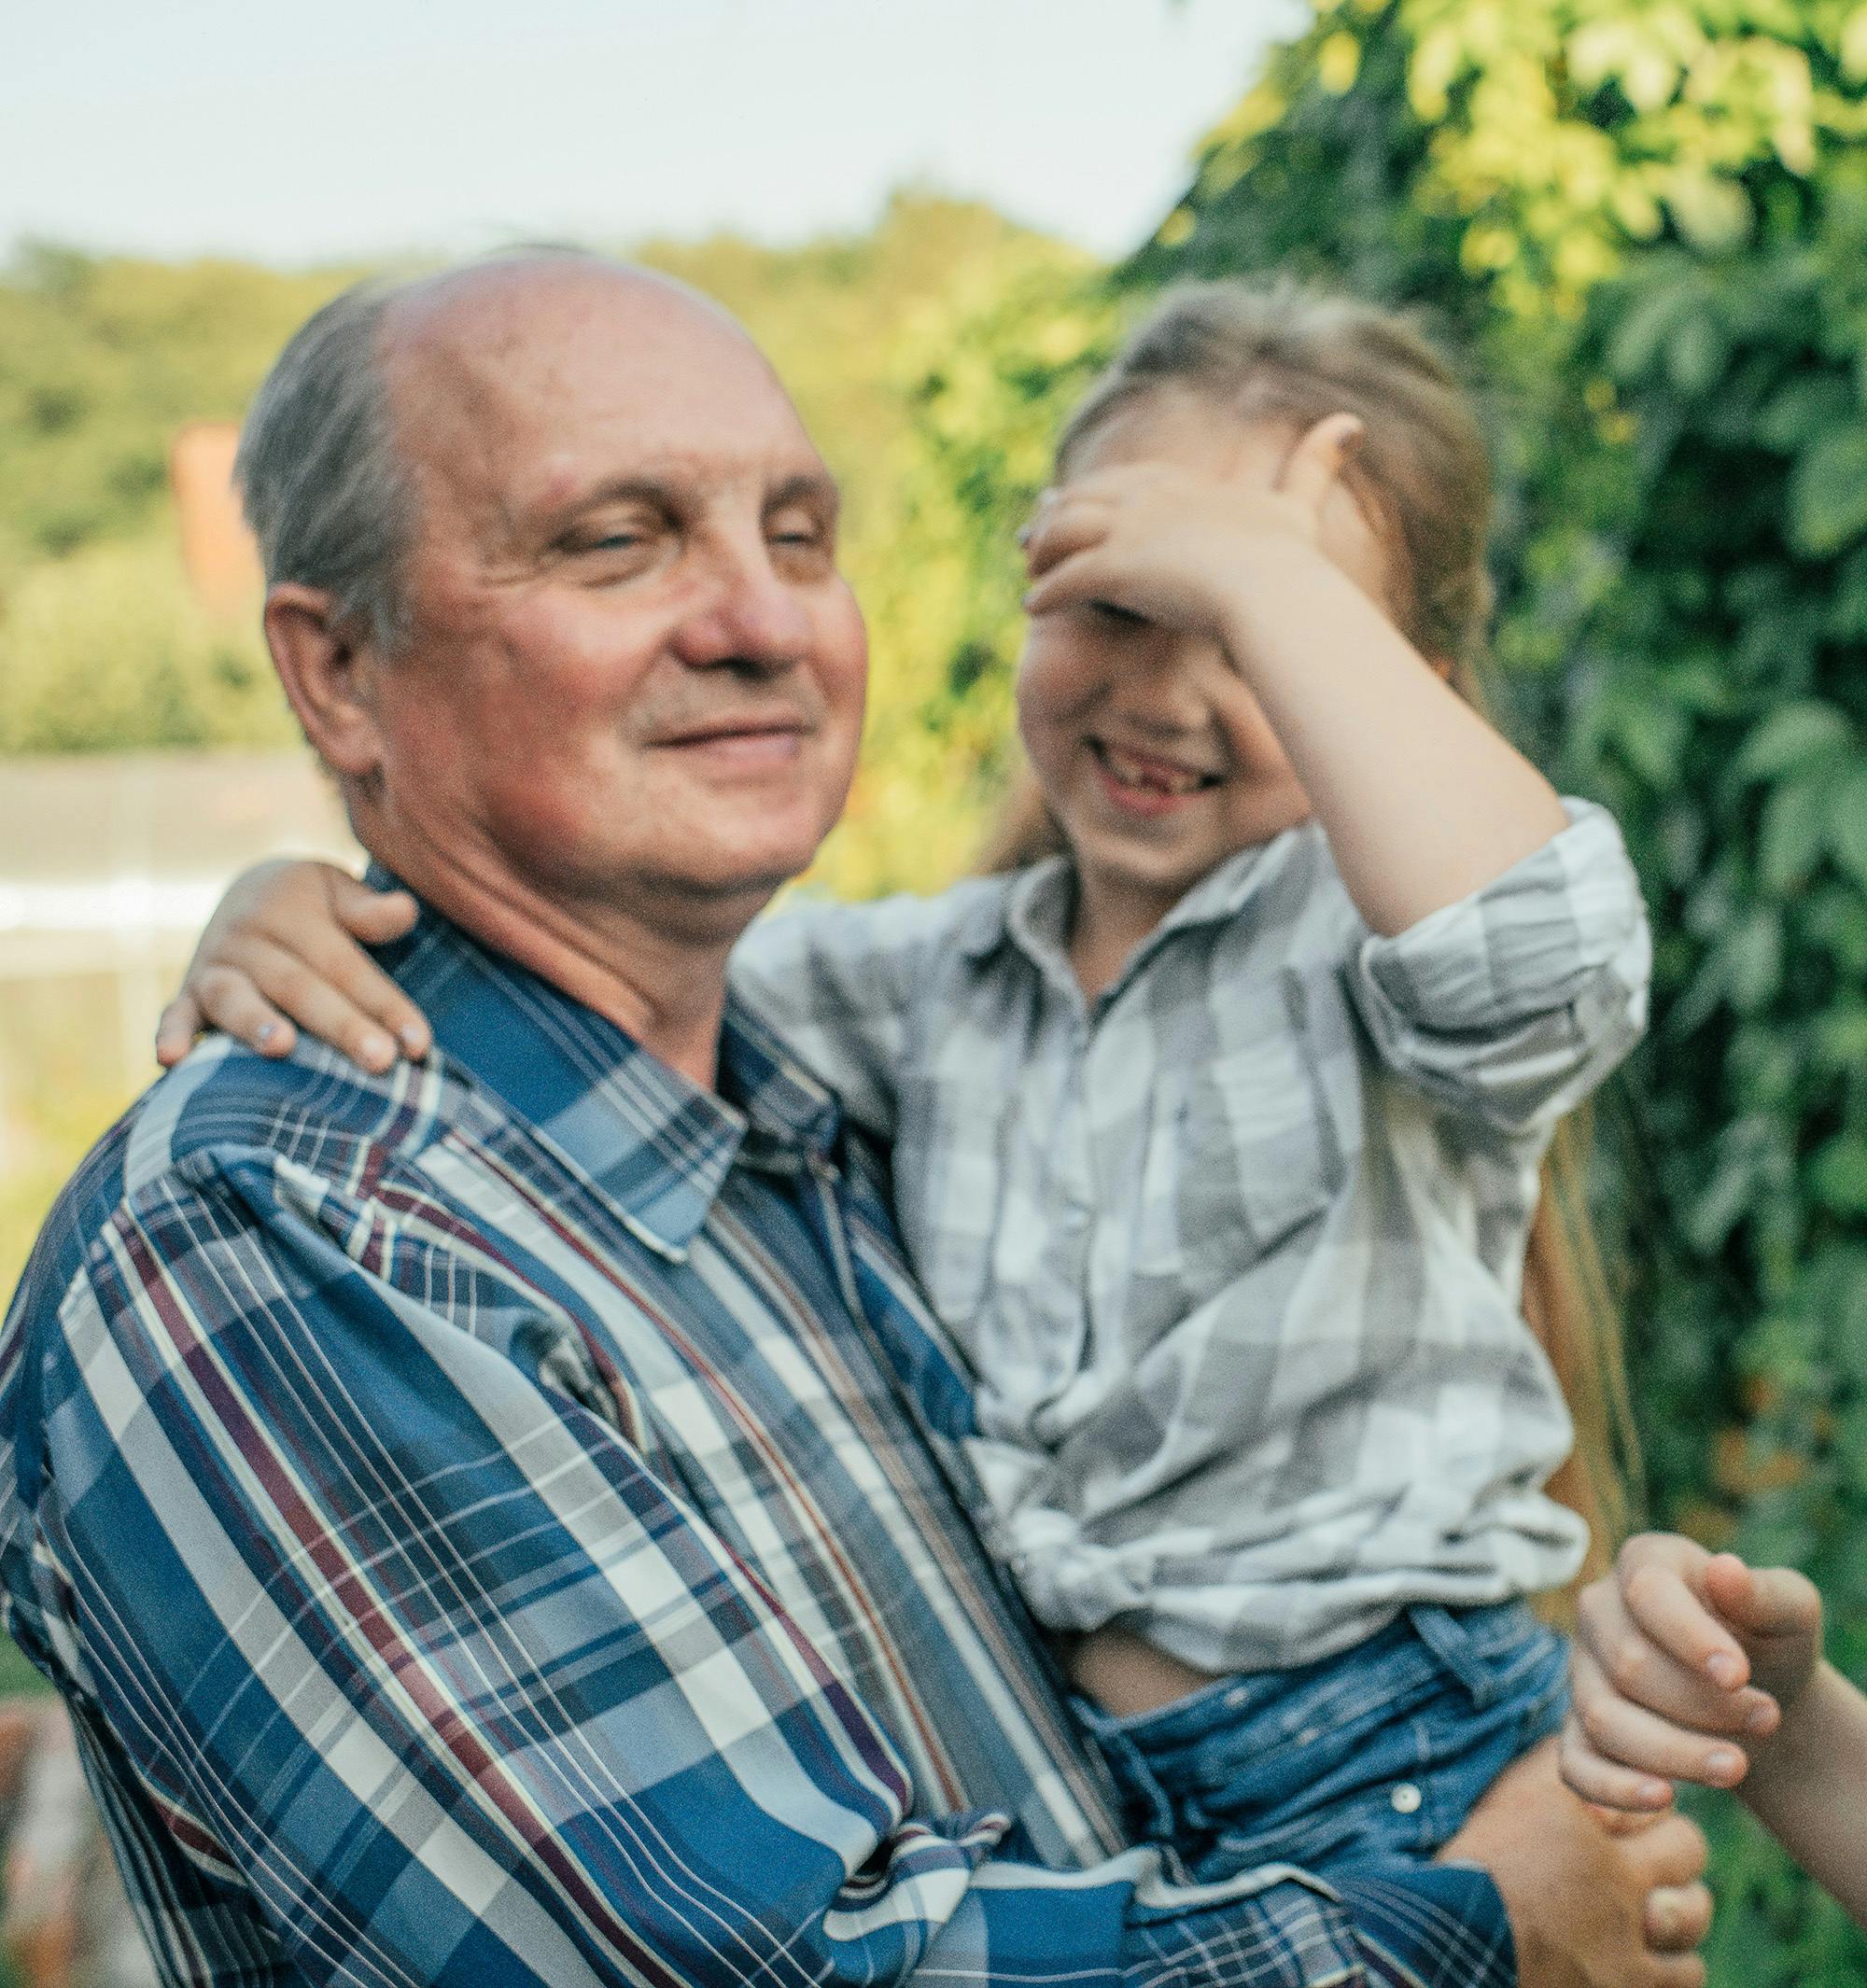 Ein Großvater mit Enkelin auf dem Arm in der Natur.